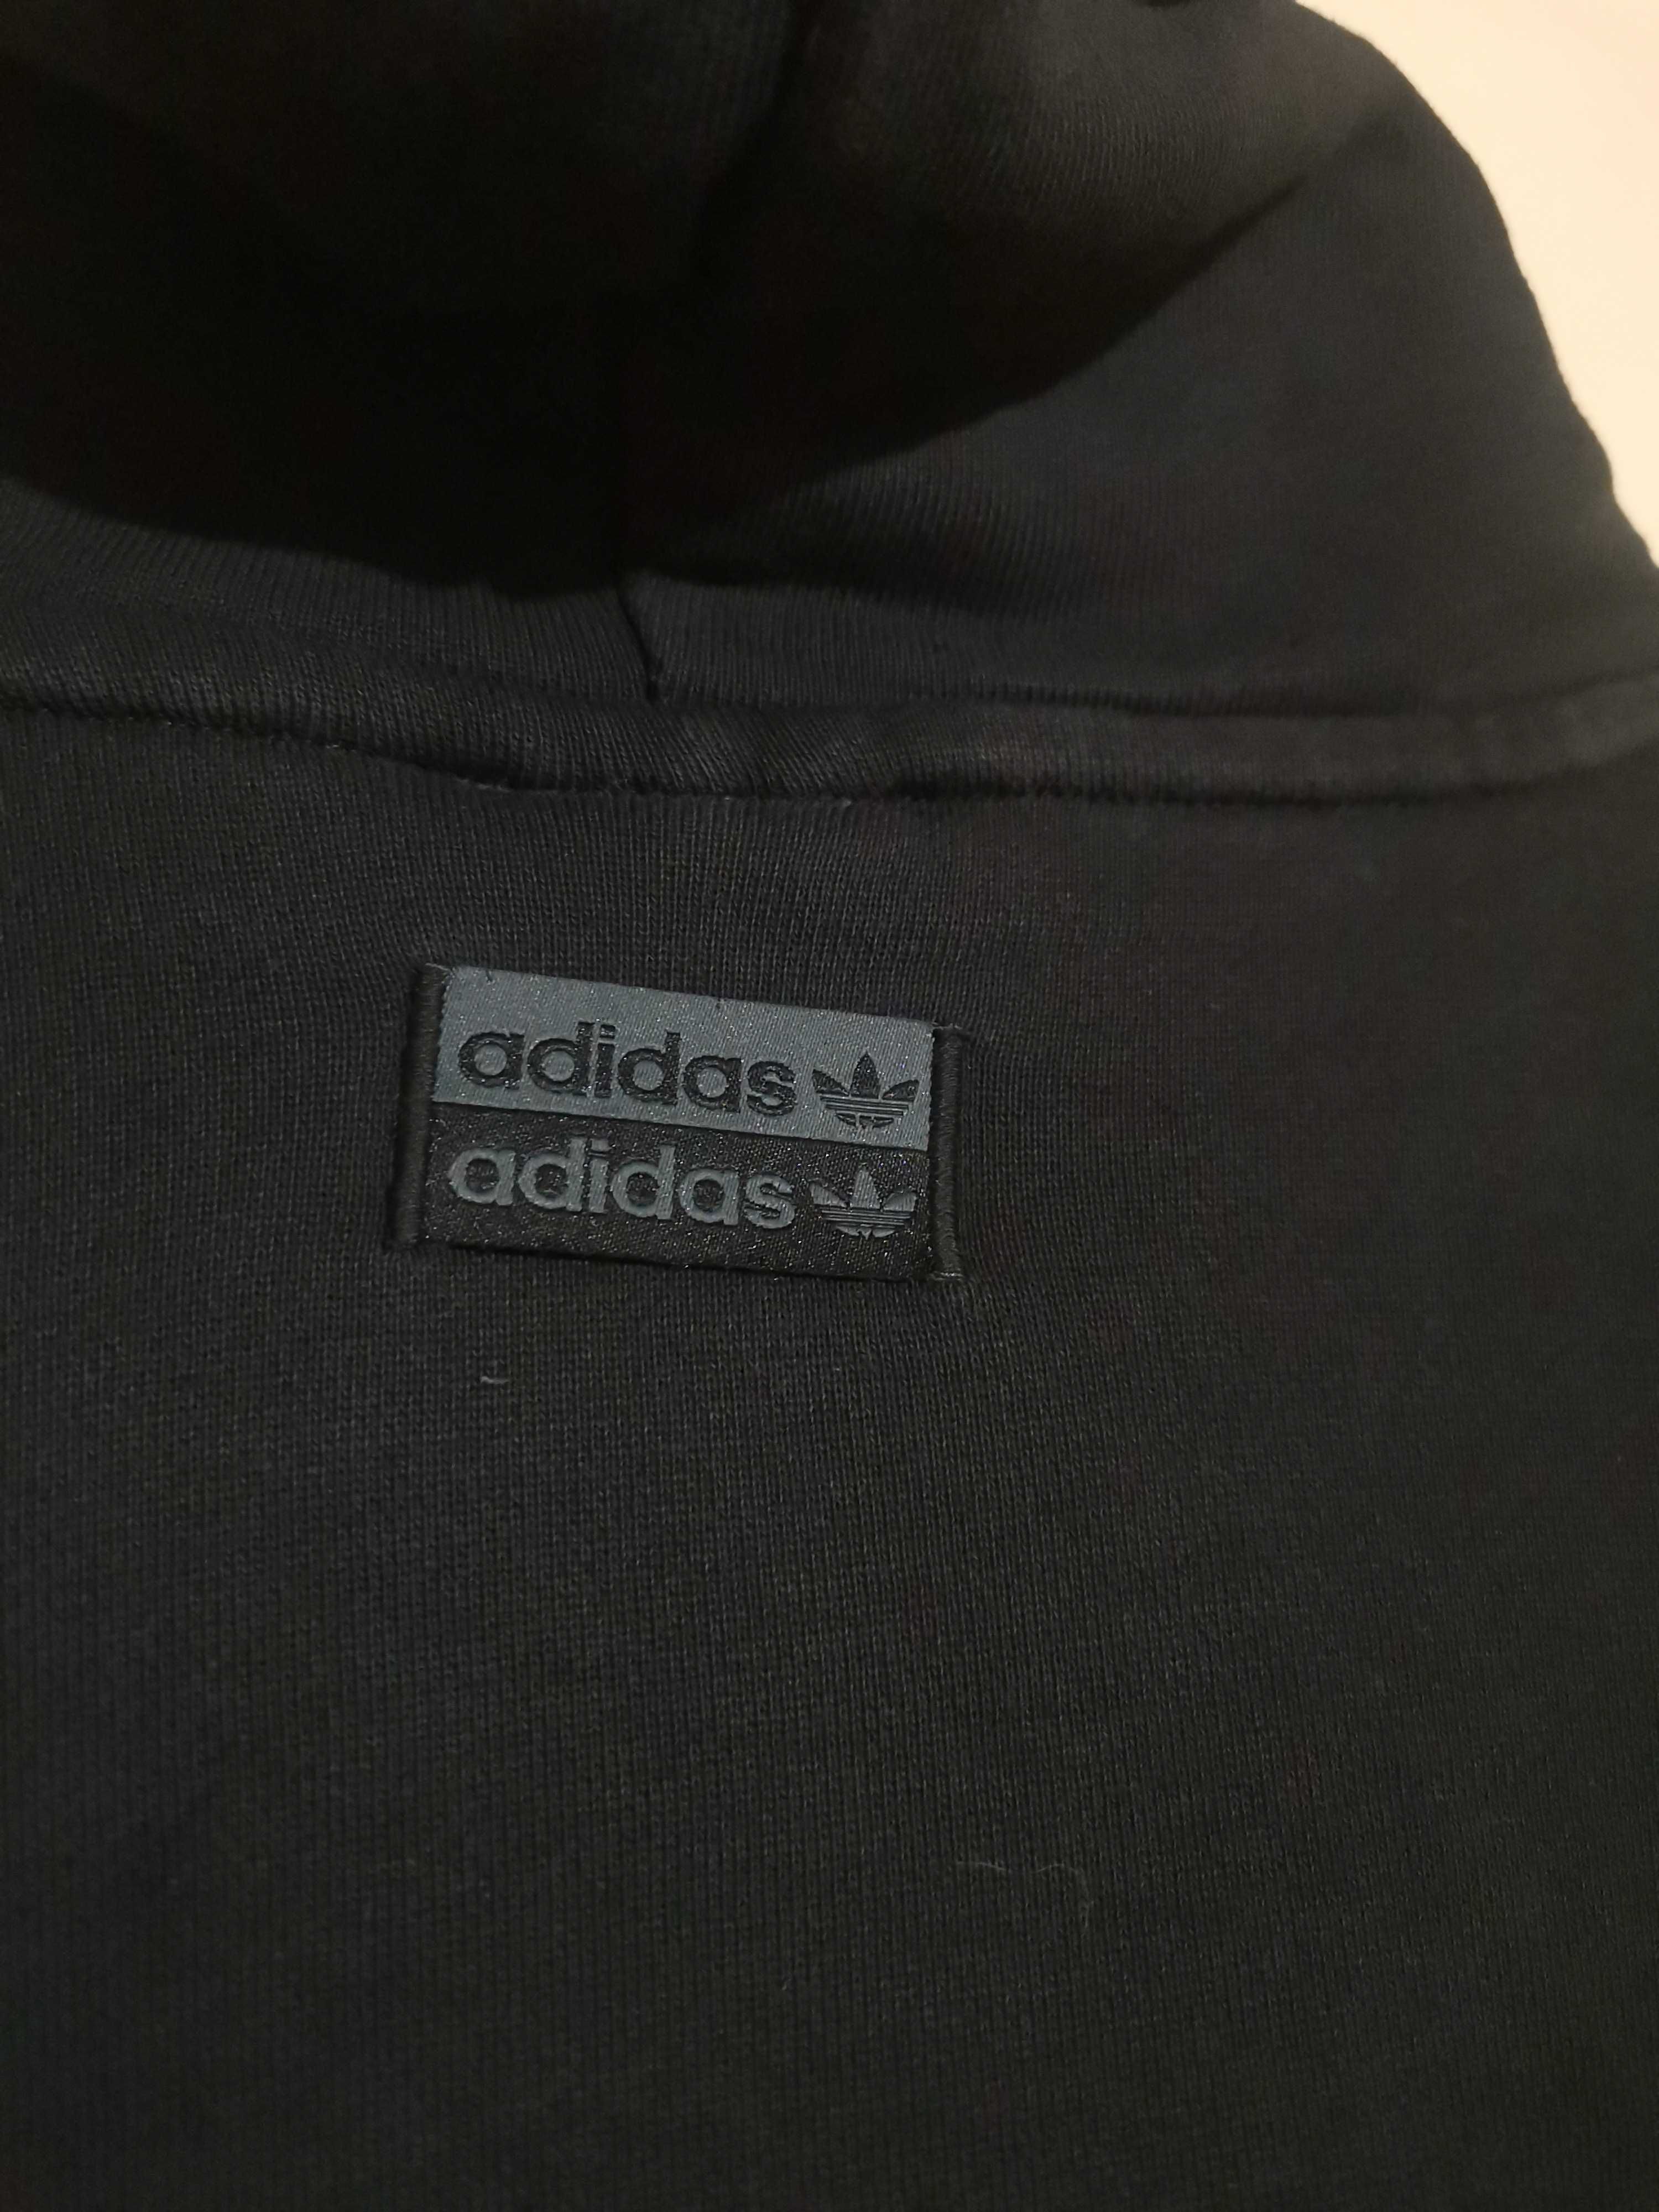 Adidas Originals F Hoody.